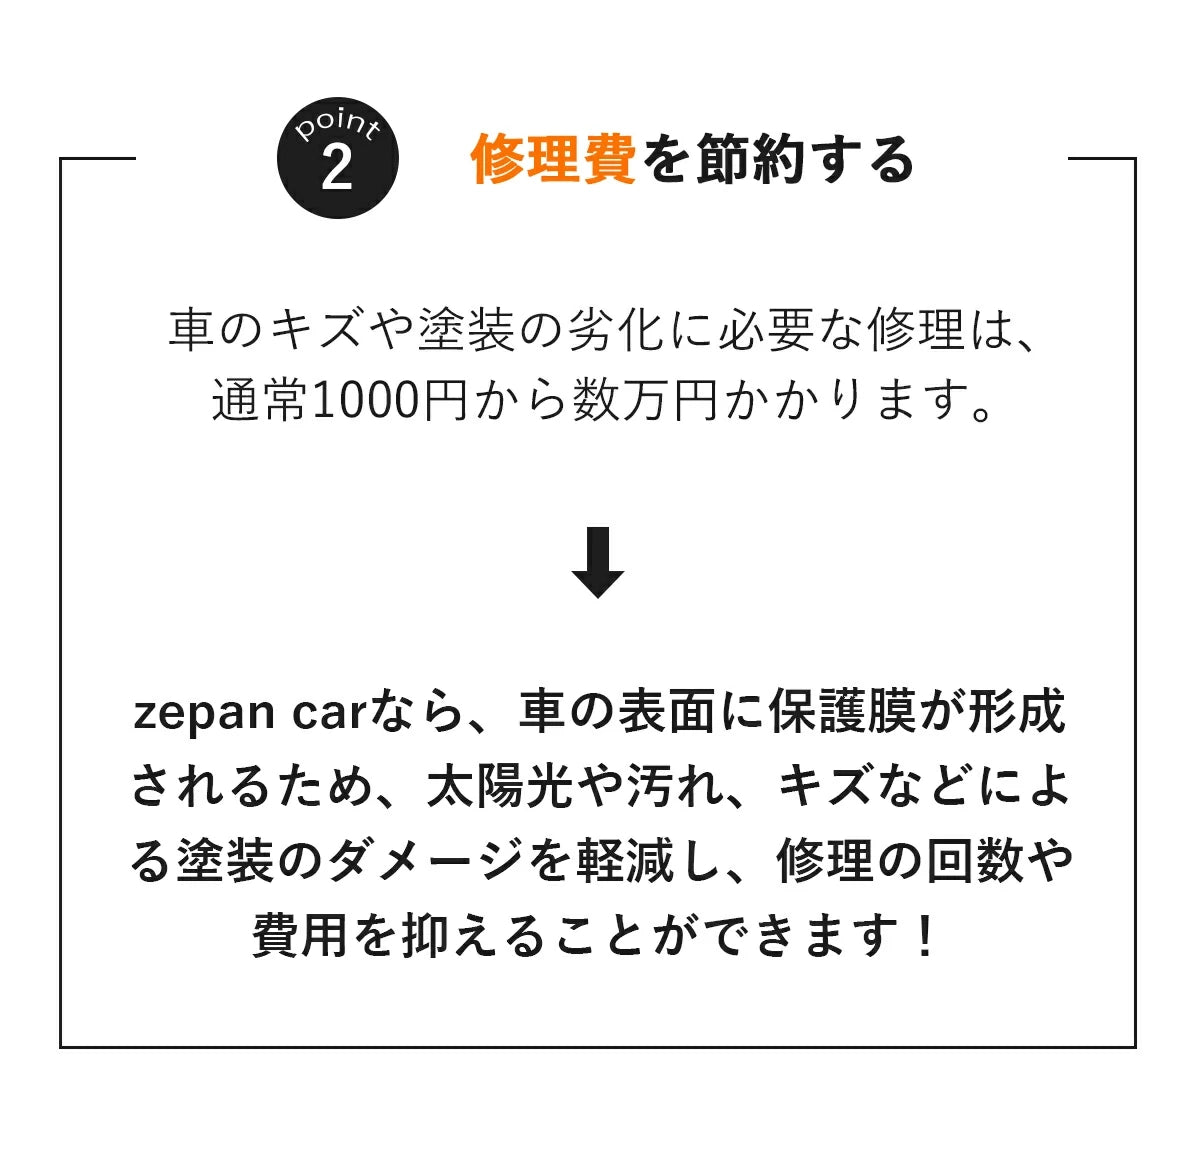 zepan carなら、車の表面に保護膜が形成されるため、太陽光や汚れ、キズなどによる塗装のダメージを軽減し、修理の回数や費用を抑えることができます!